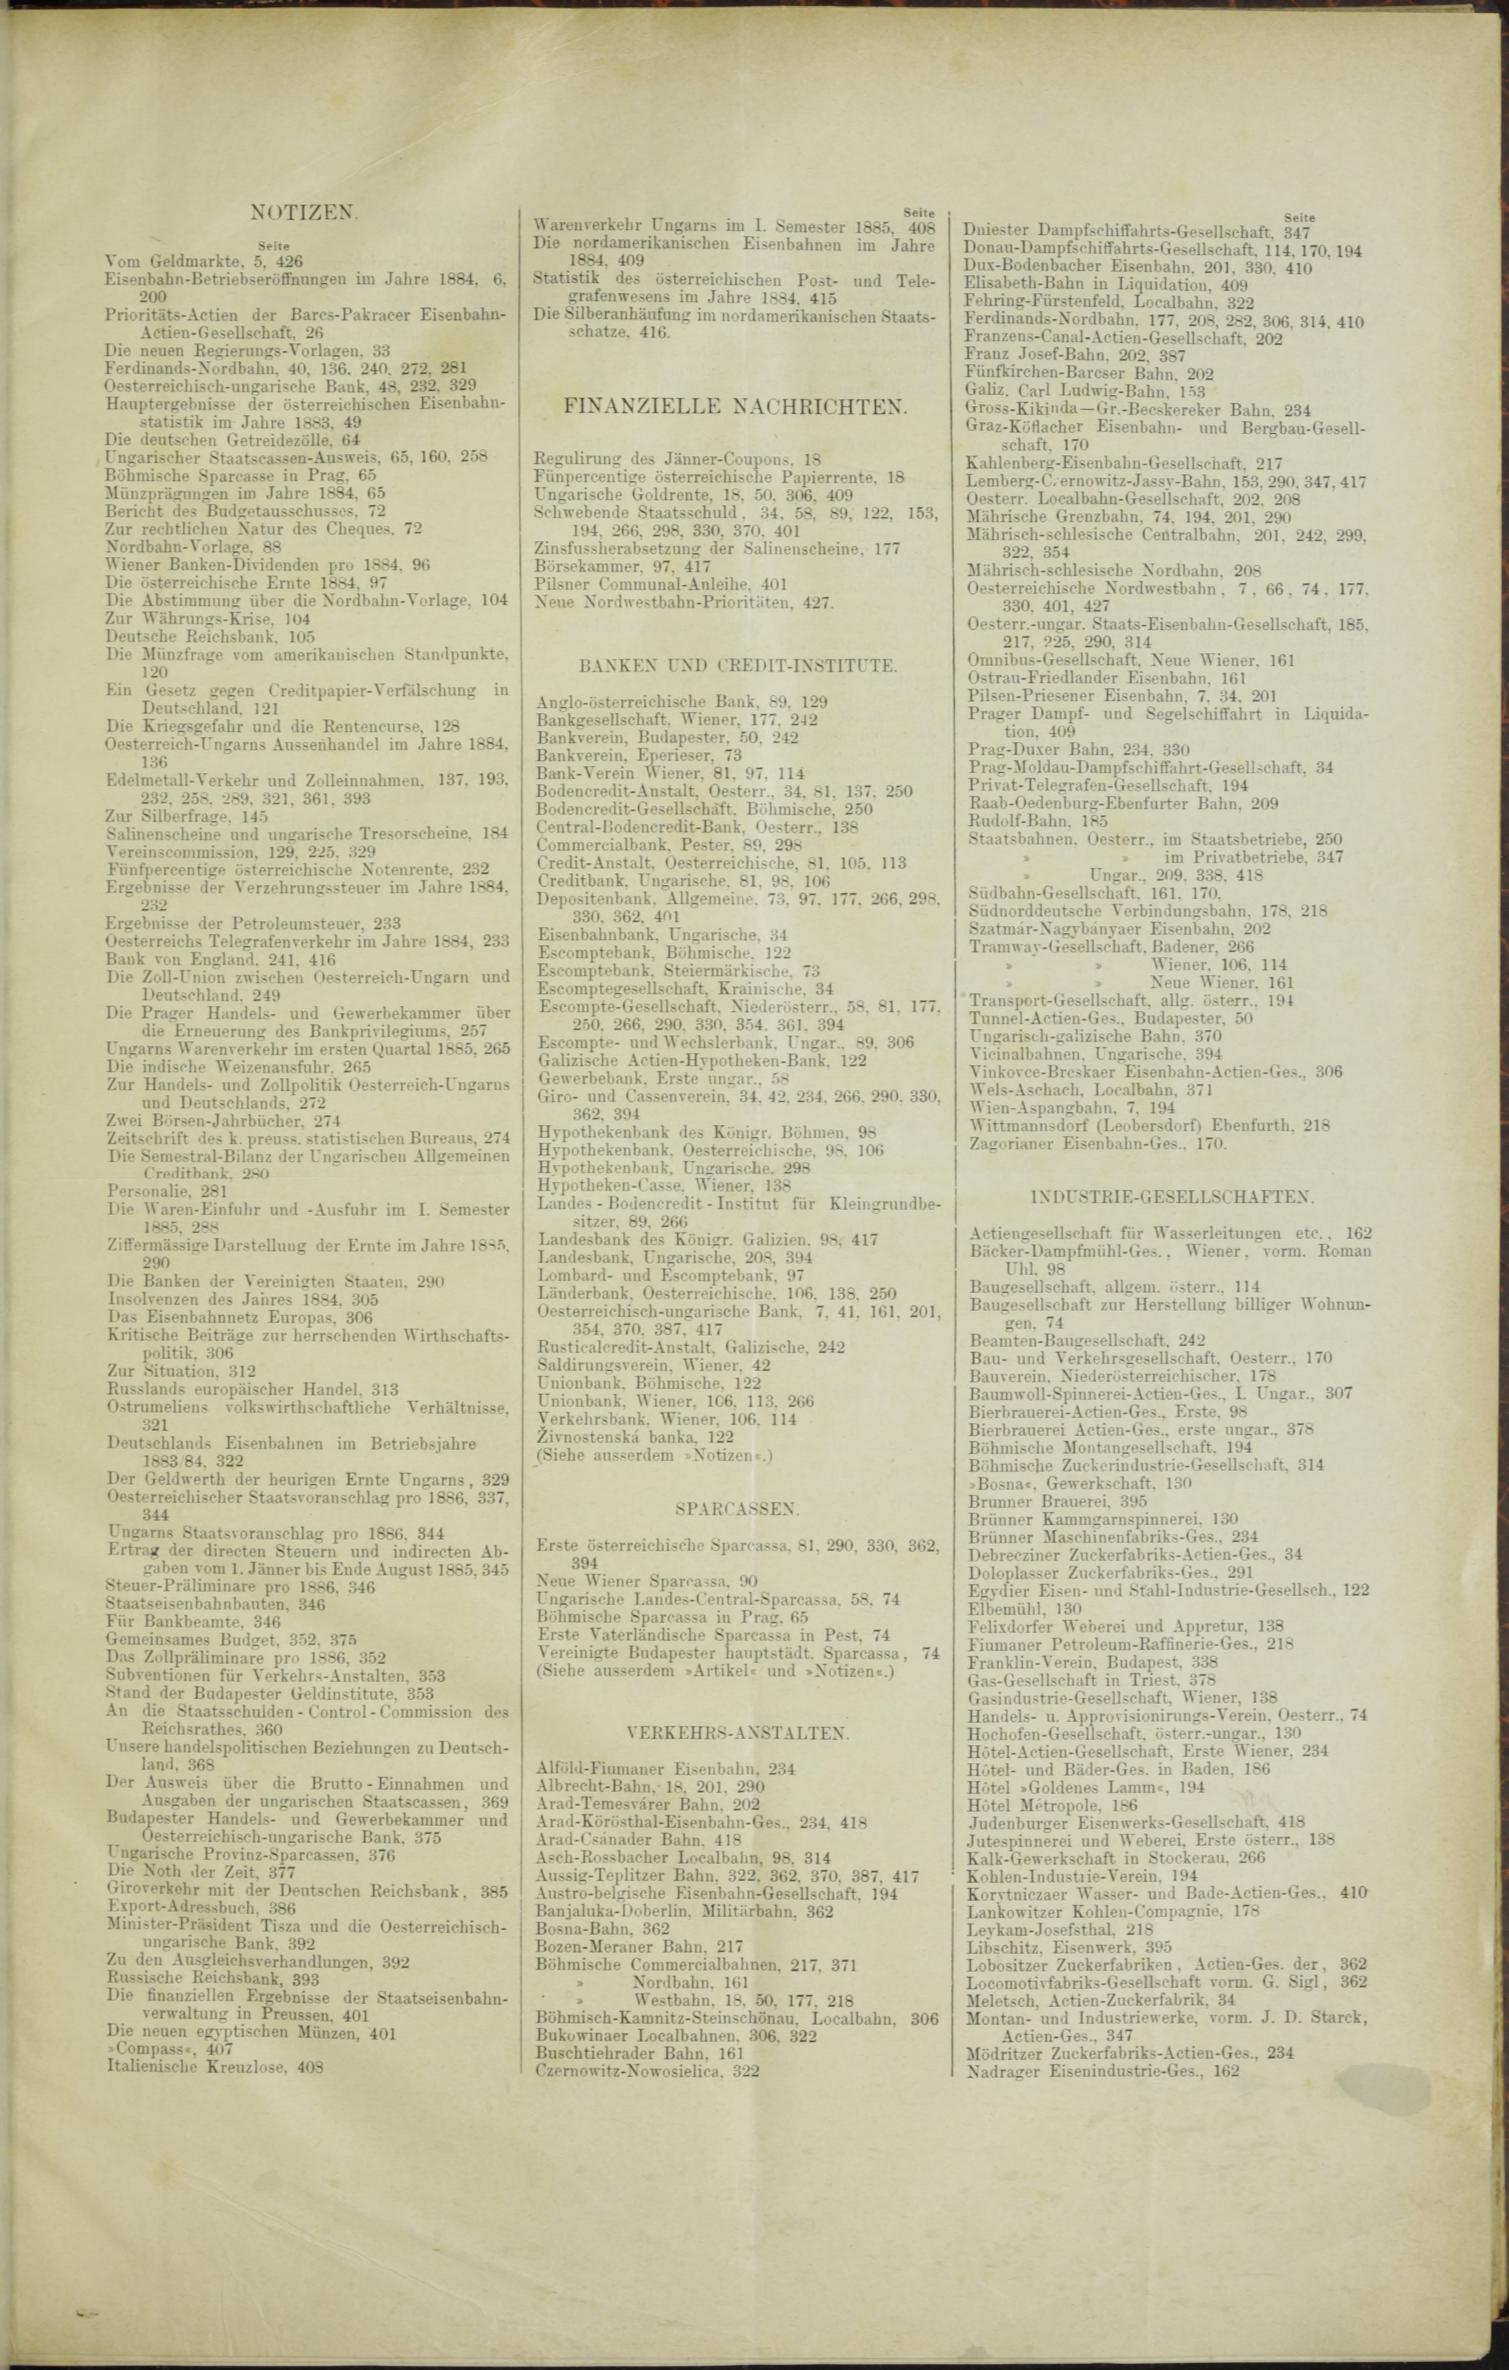 Der Tresor 23.07.1885 - Seite 11